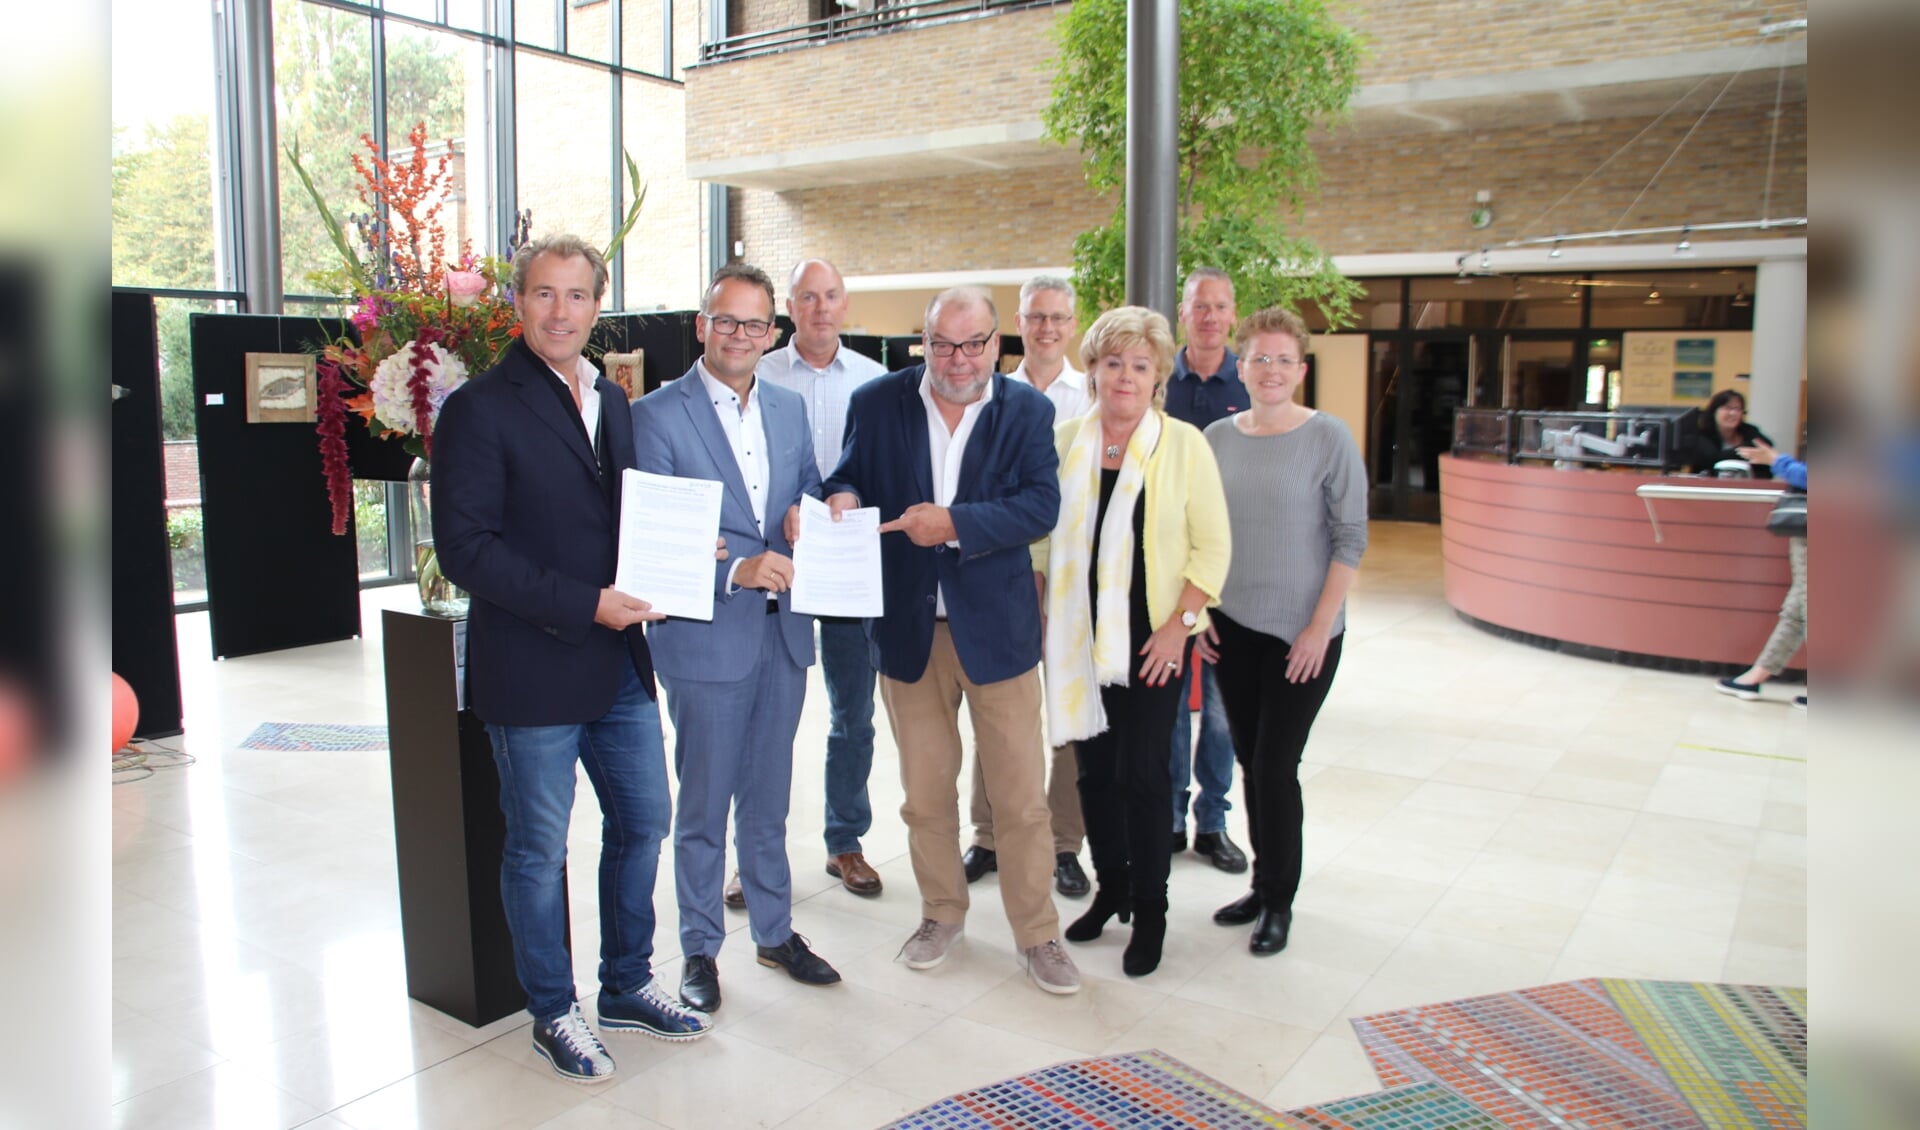 Drie partijen zetten tijdens de officiële bijeenkomst hun handtekening. | Foto Elske van der Valk.